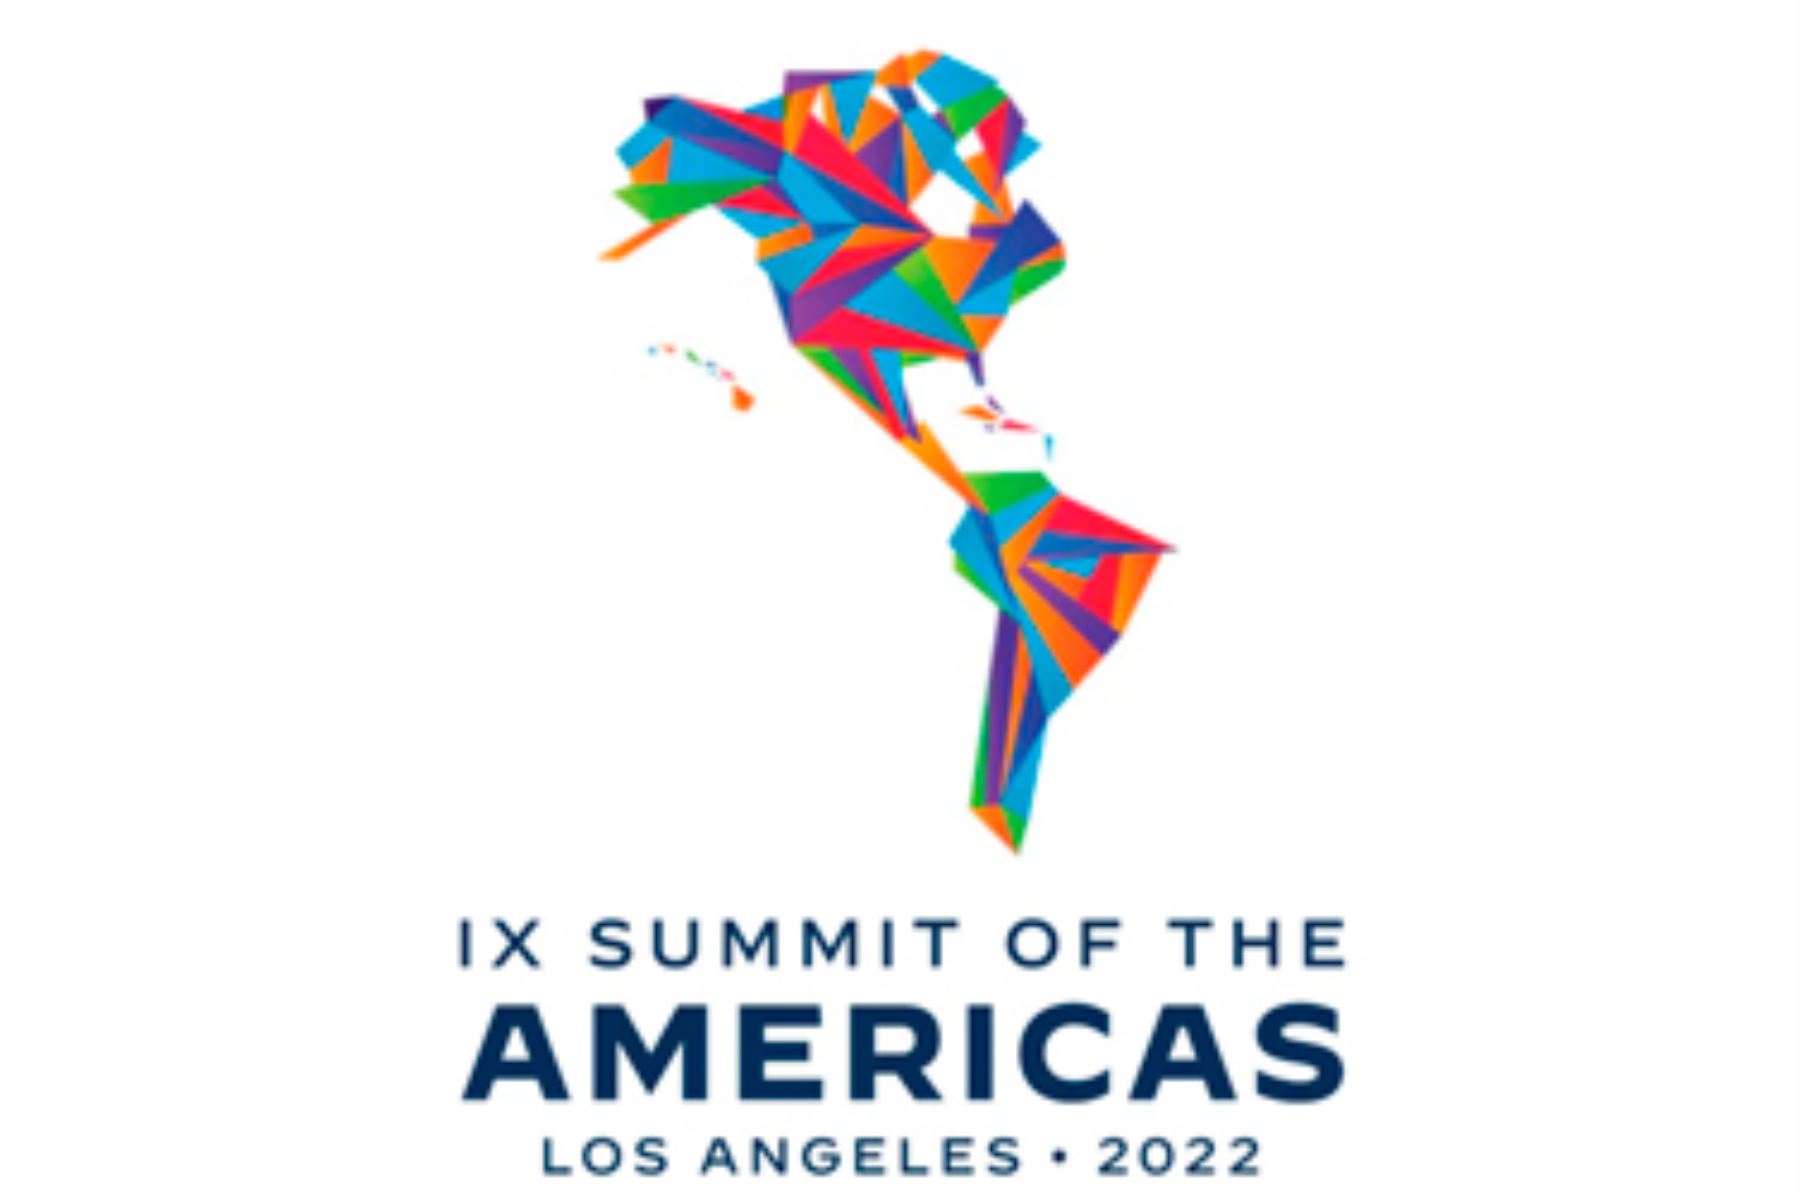 La IX Cumbre de las Américas será la segunda organizada por Estados Unidos después de la edición original en Miami en 1994. Foto: Internet